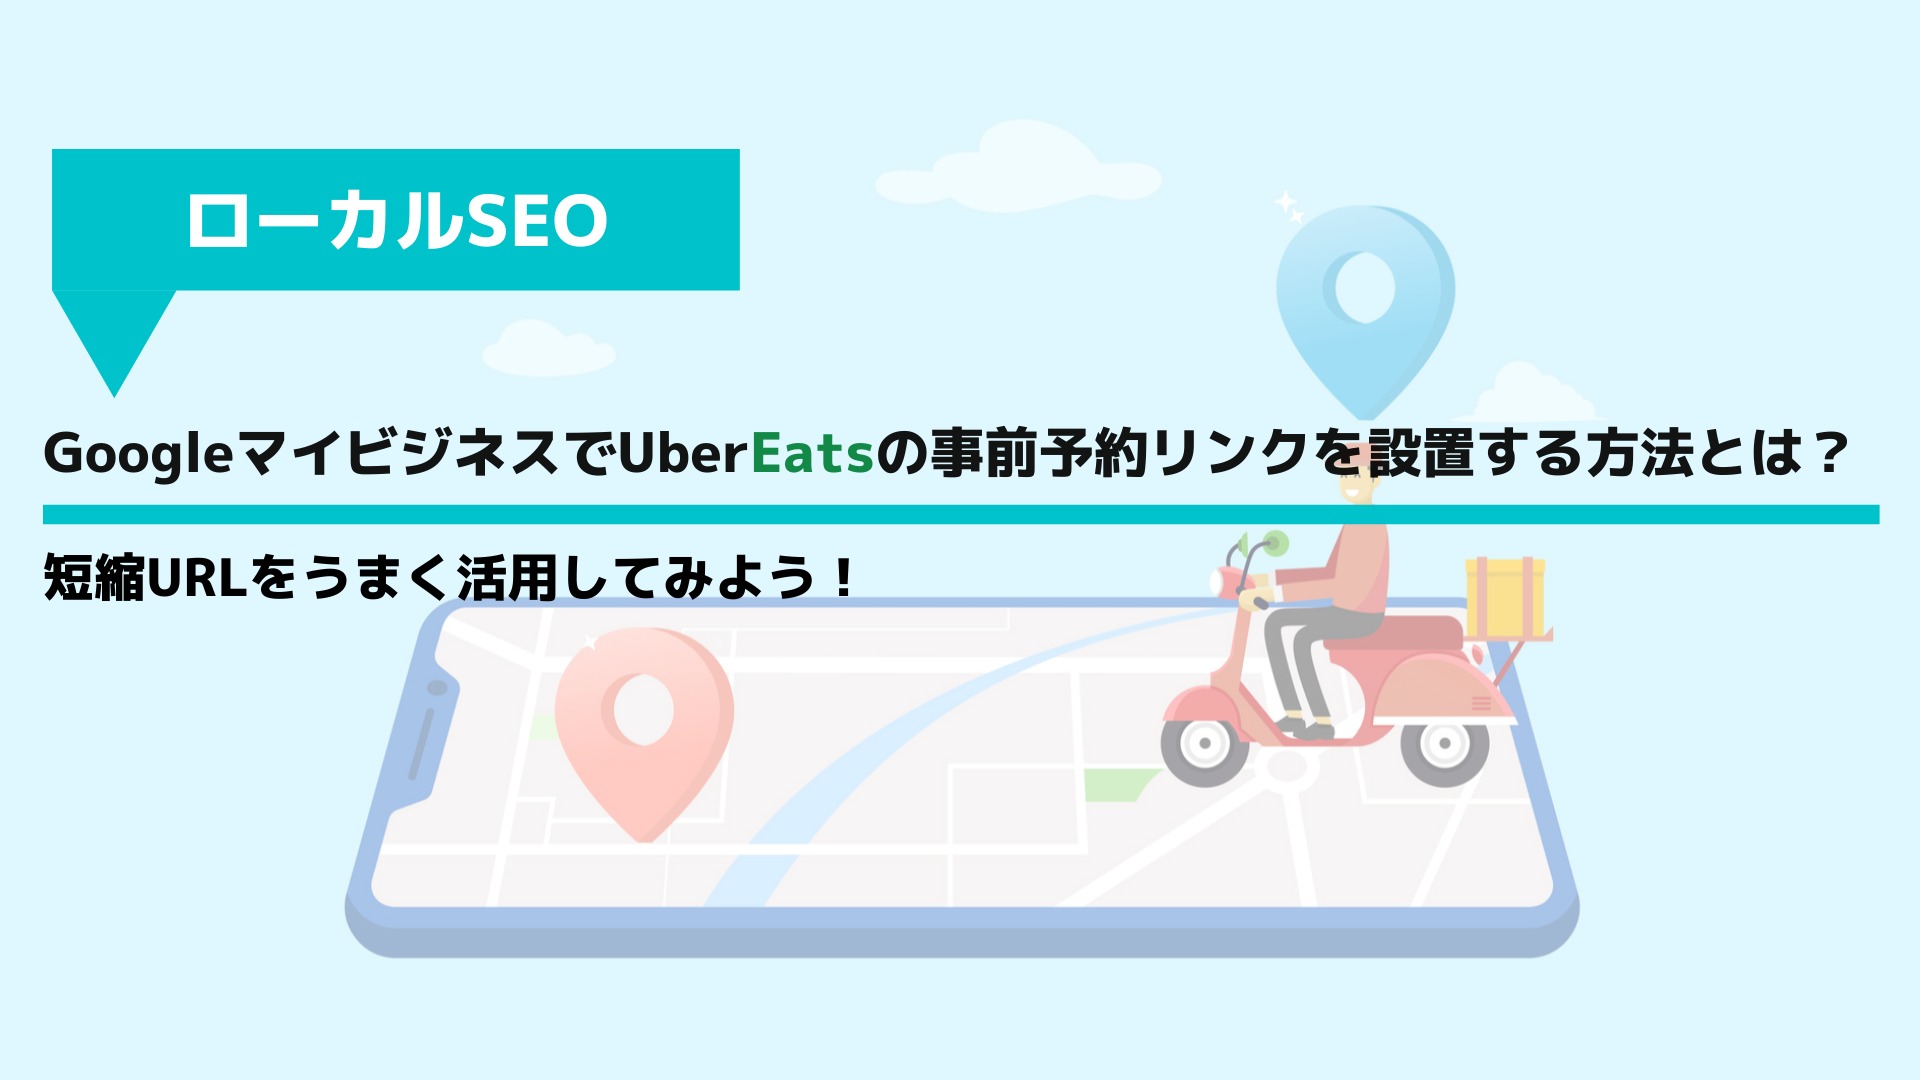 GoogleマイビジネスでUber Eatsの事前予約リンクを設置する方法とは？